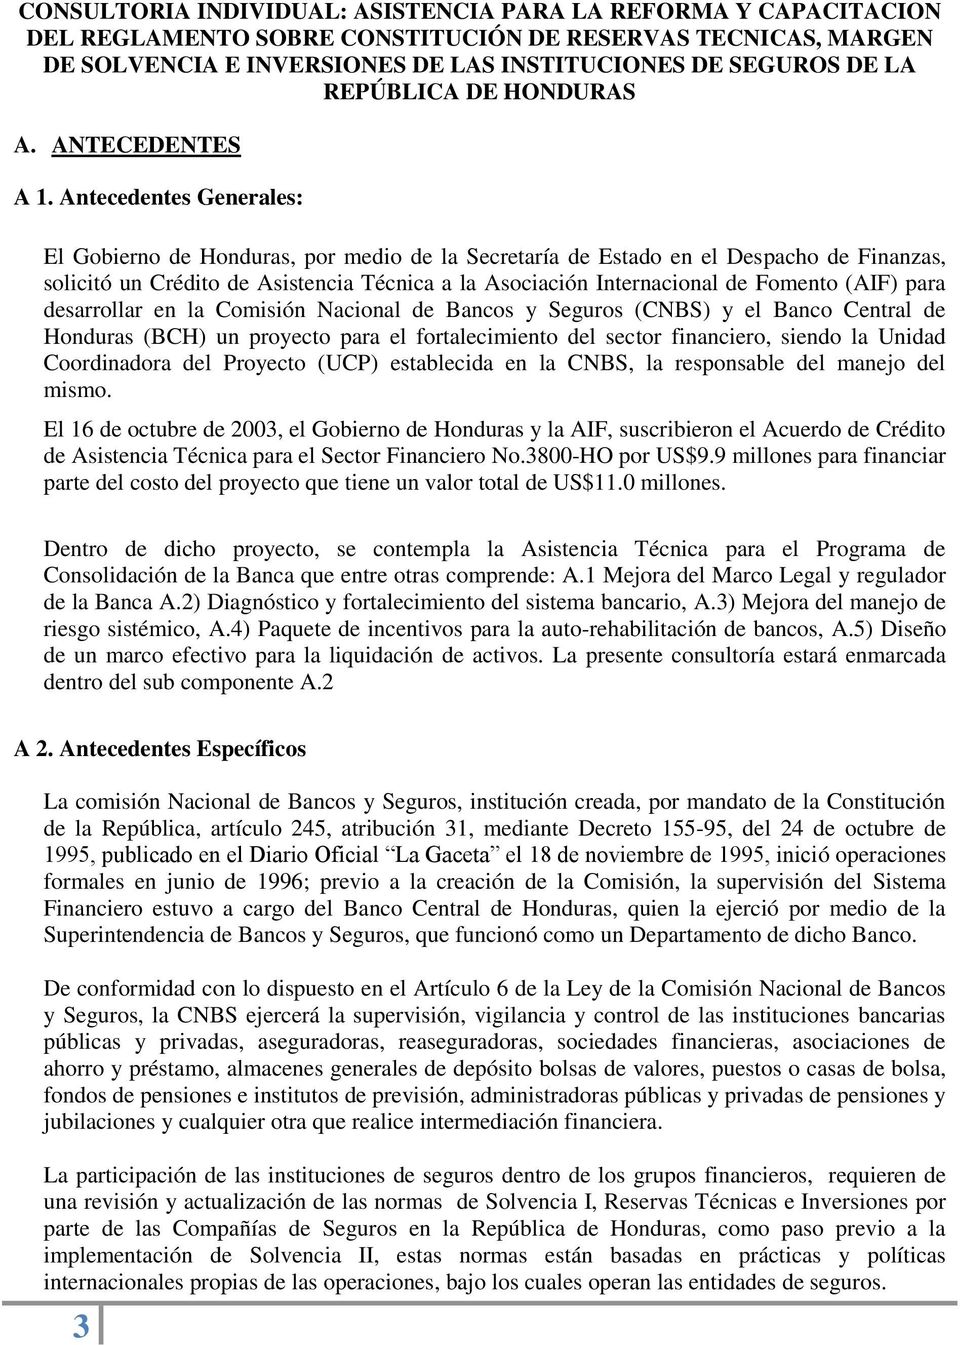 Antecedentes Generales: El Gobierno de Honduras, por medio de la Secretaría de Estado en el Despacho de Finanzas, solicitó un Crédito de Asistencia Técnica a la Asociación Internacional de Fomento